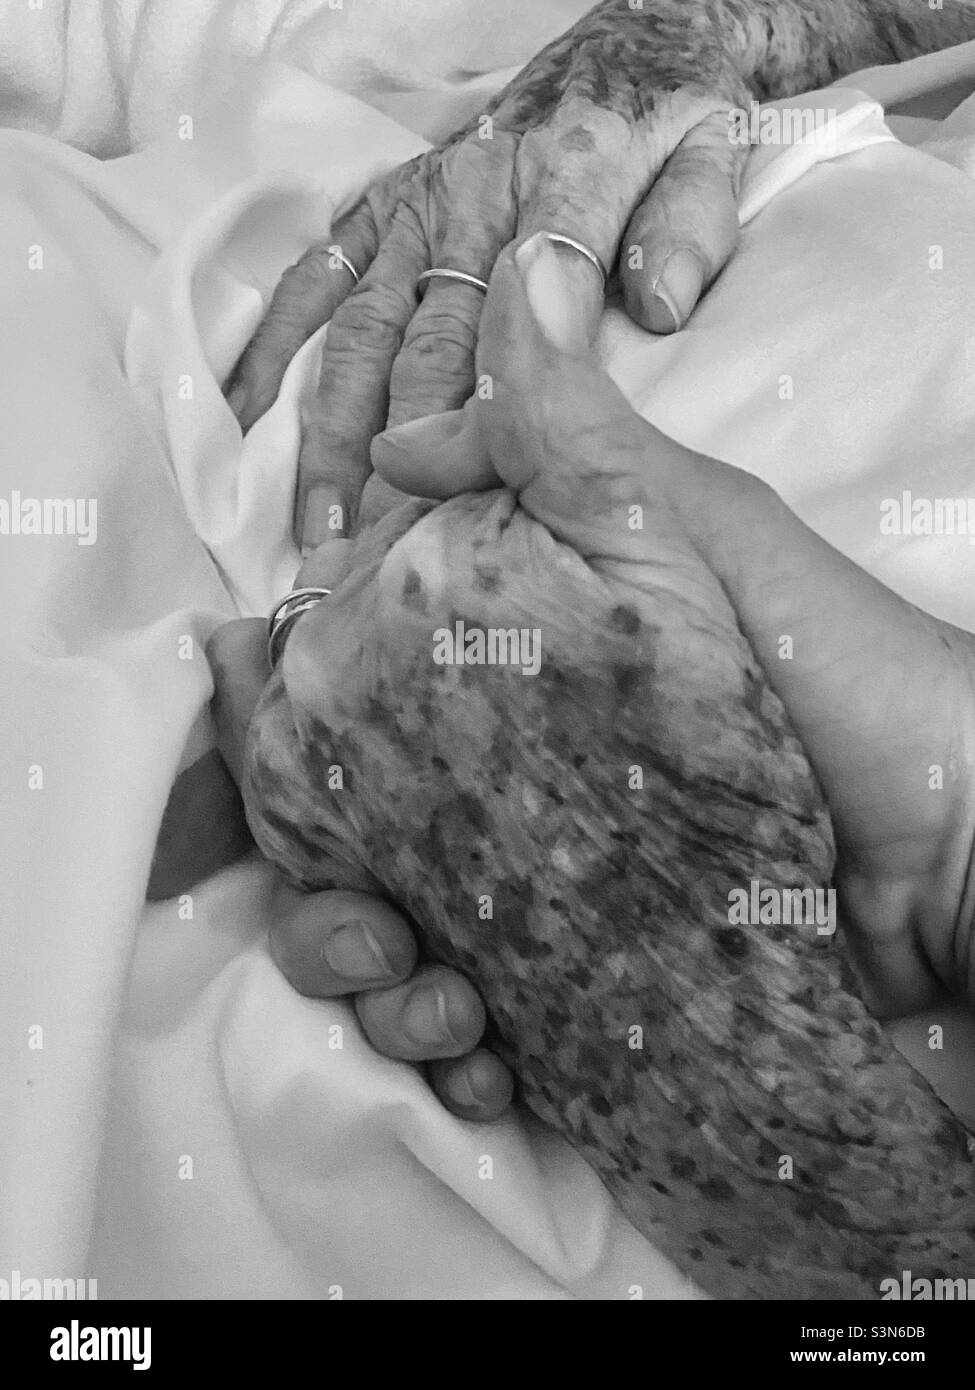 Tenir la main de la grand-mère dans le lit d'hôpital sous soins palliatifs Banque D'Images